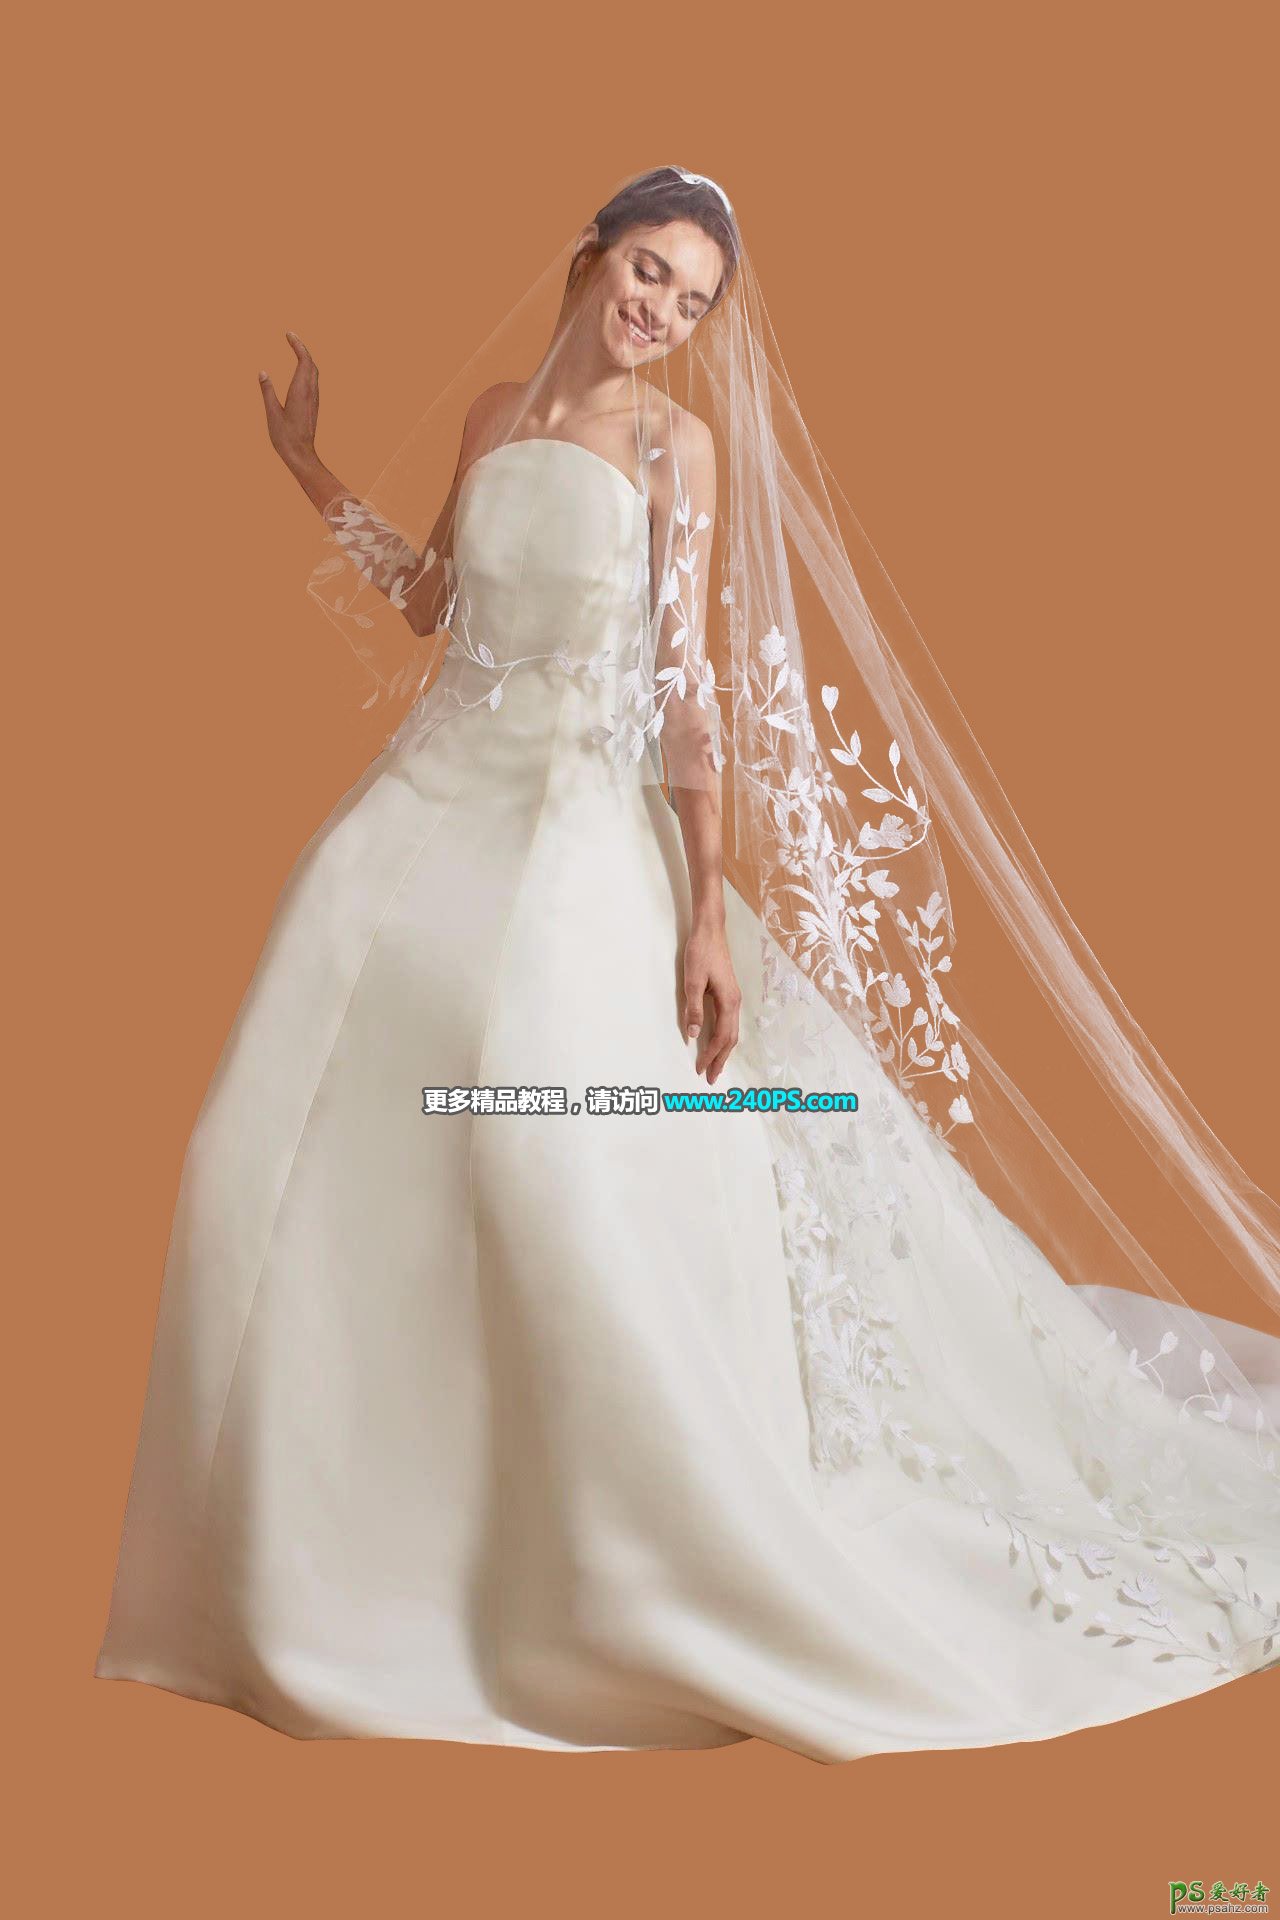 PS婚纱照抠图：用通道及调色工具抠出复杂背景中拍摄的美女婚纱照